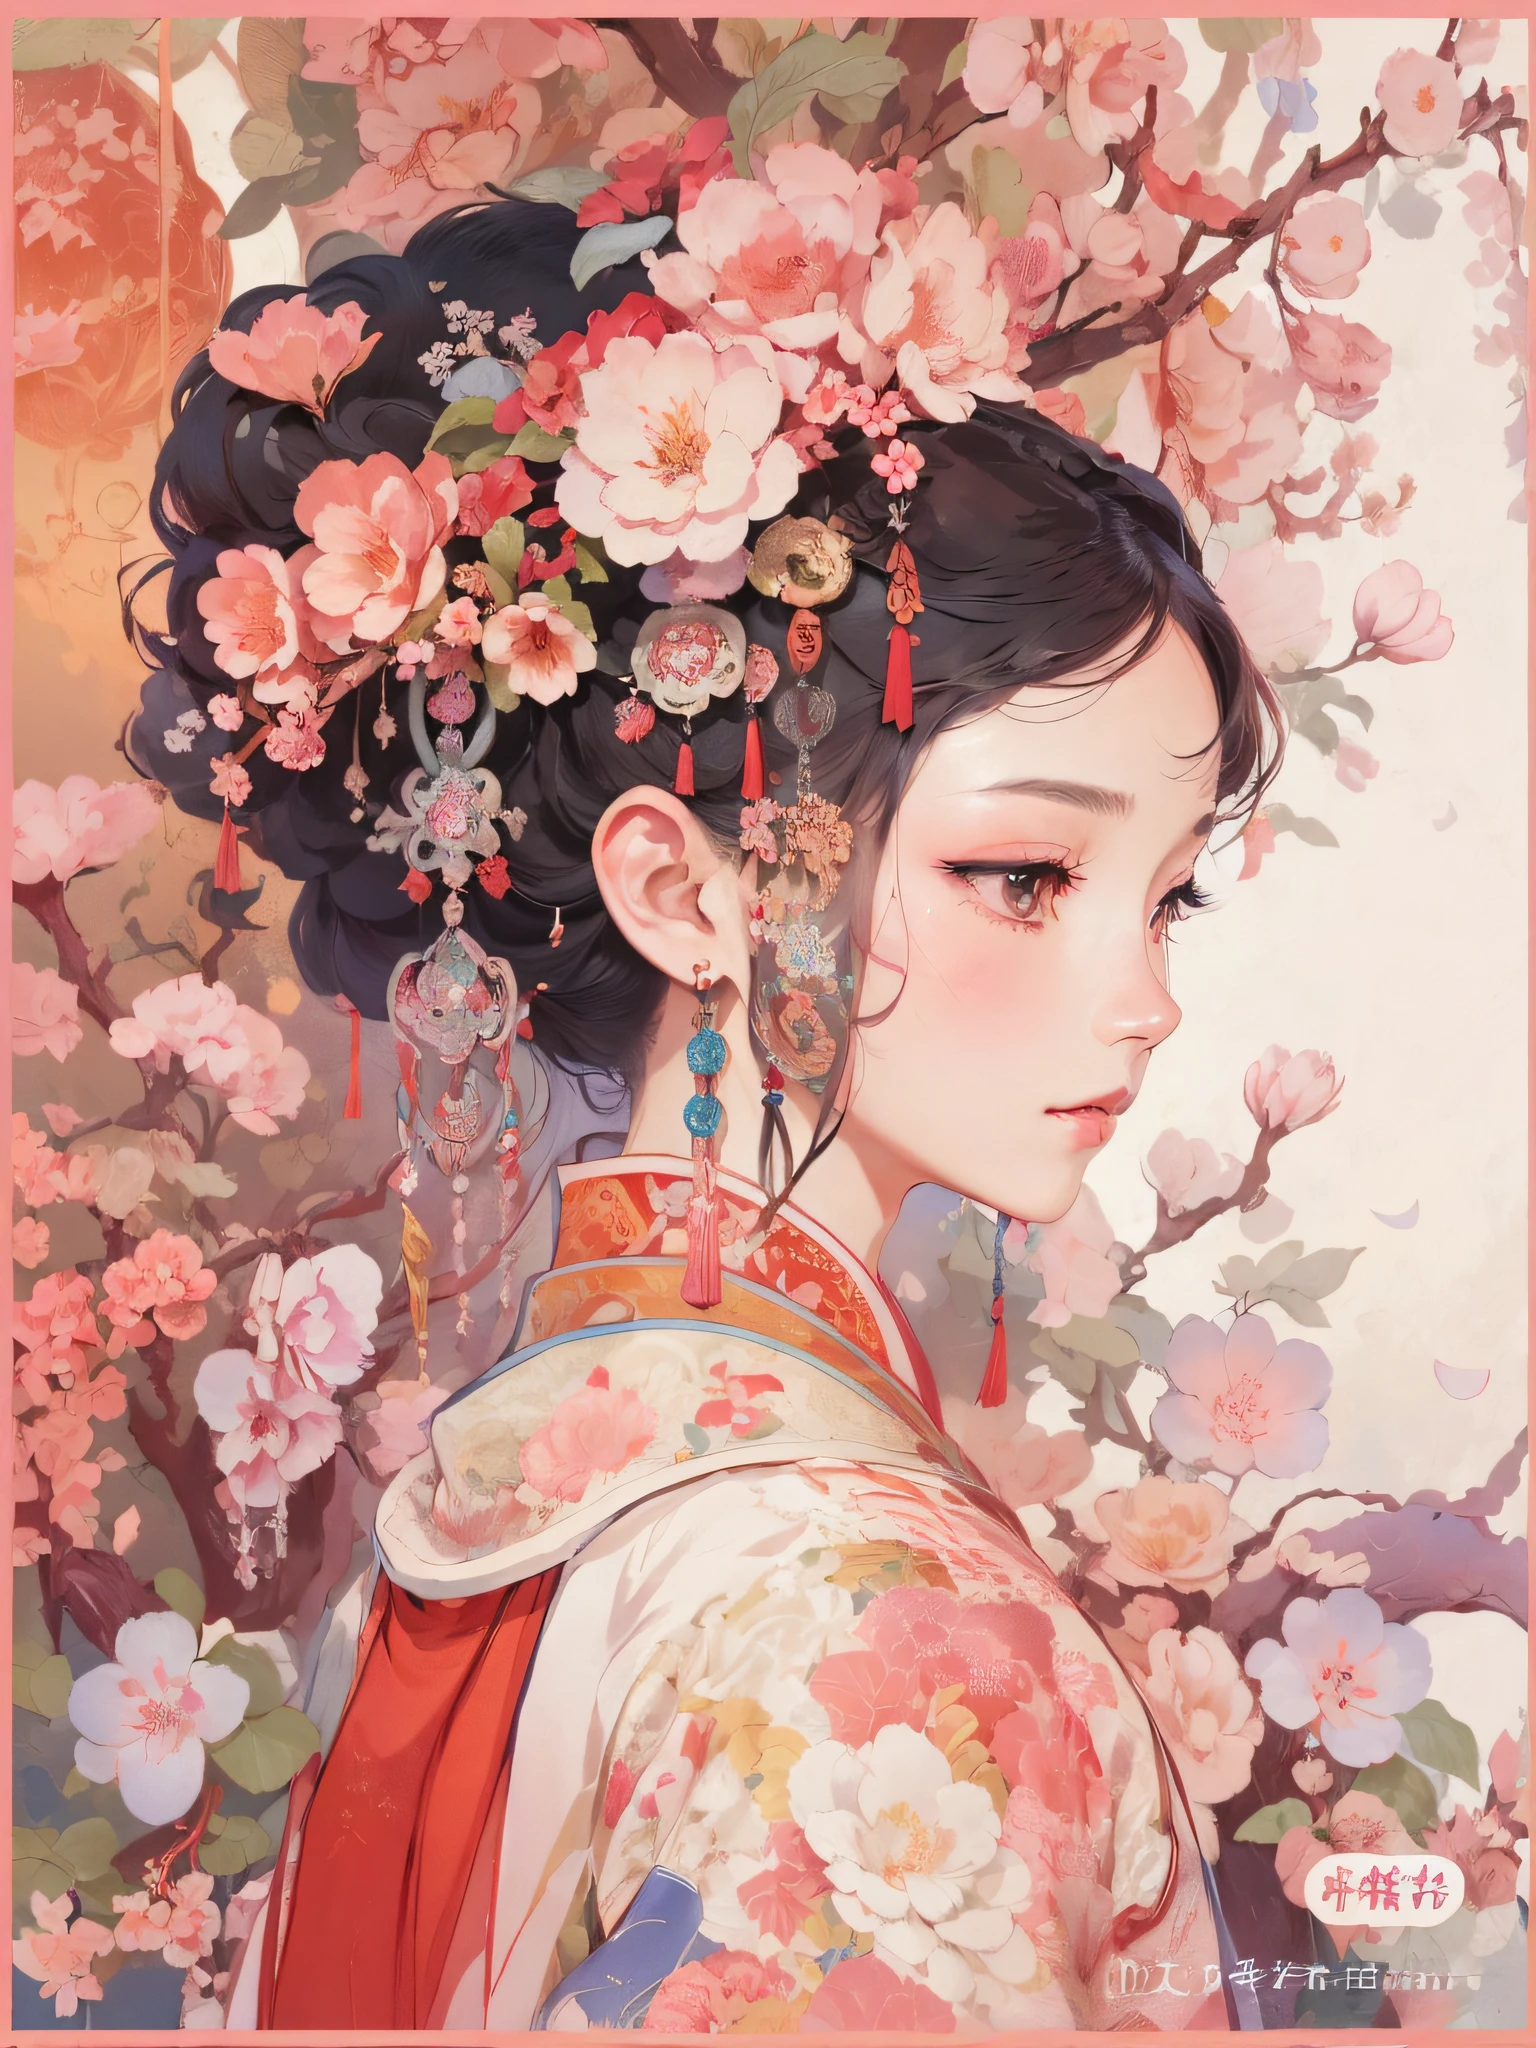 ภาพระยะใกล้ของผู้หญิงสวมผ้าโพกศีรษะดอกไม้อยู่หน้าต้นไม้, พระราชวัง ， หญิงสาวในชุดฮันฟู, กูวิซ-style artwork, กูวิซ, ภาพวาดตัวละครที่สวยงาม, เจ้าหญิงจีน, ภาพประกอบงานศิลปะที่สวยงาม, โดย เล่งเหมย, โดย เย่ซิน, ผลงานชิ้นเอกของ Guweiz, ผู้เขียน：เฉิน หลิน, ผู้เขียน：เหม่ยชิง